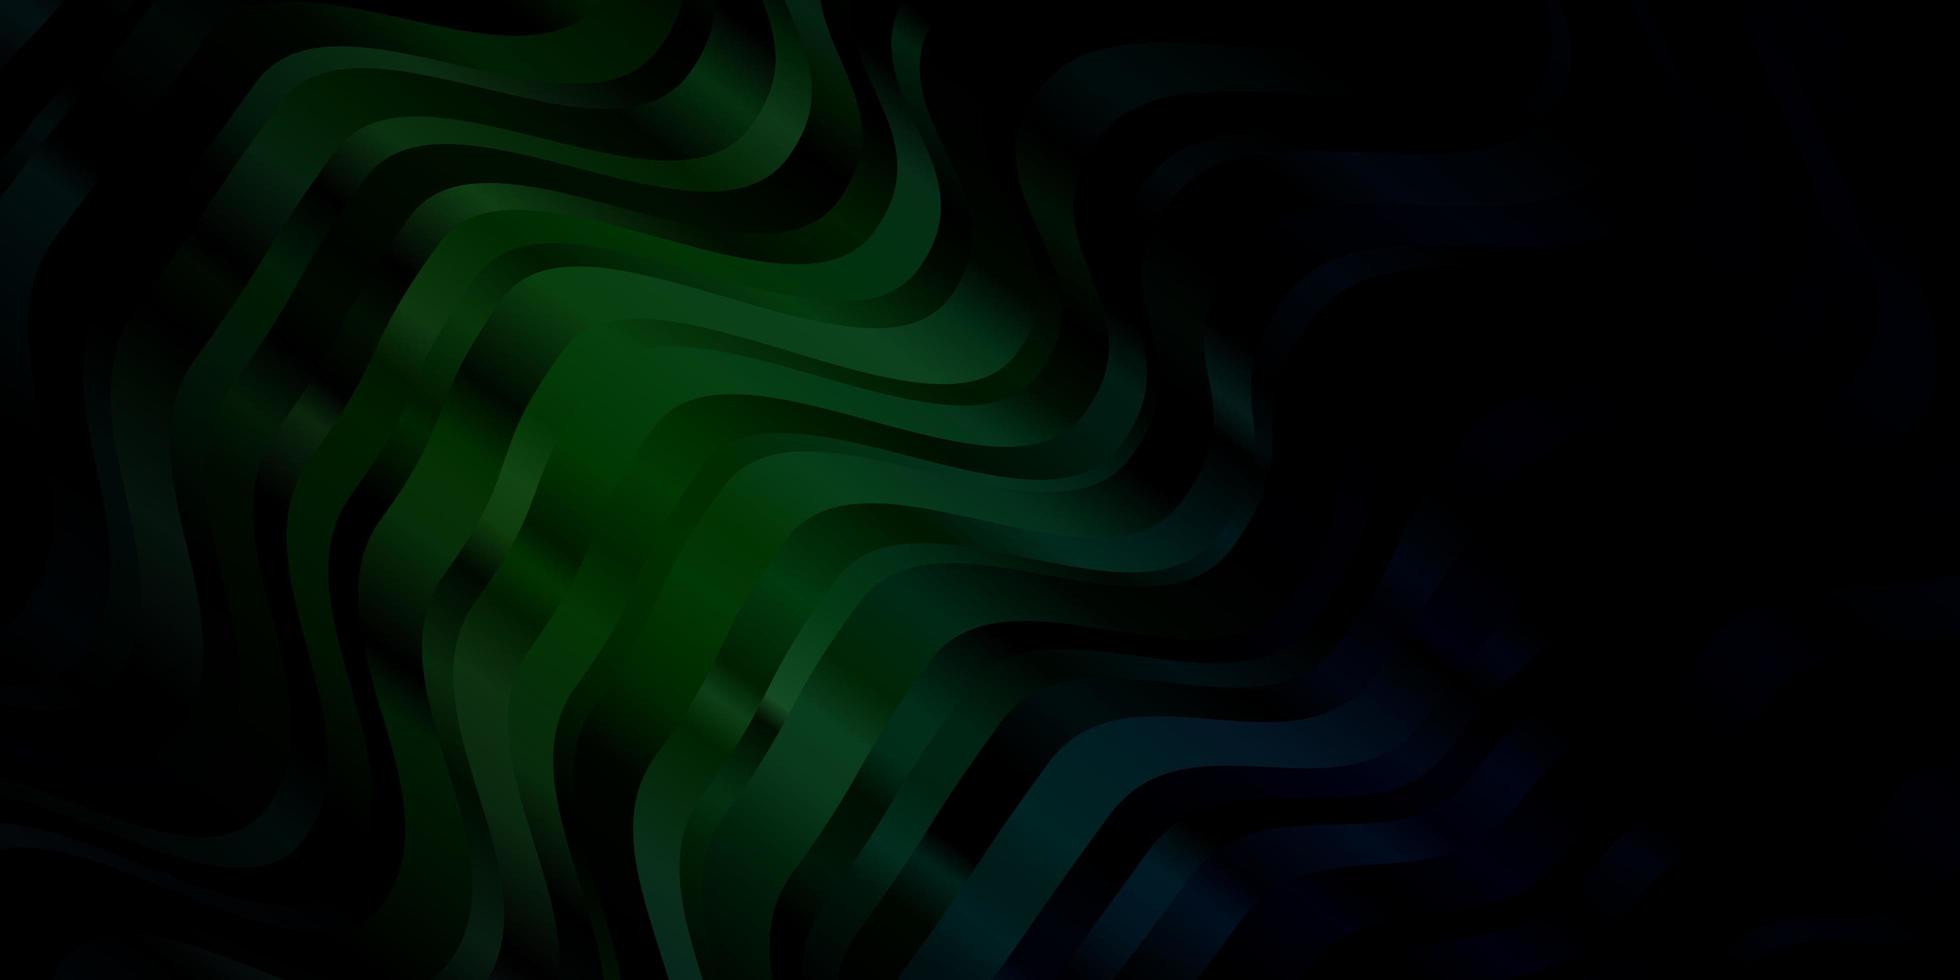 sfondo vettoriale verde scuro con fiocchi.